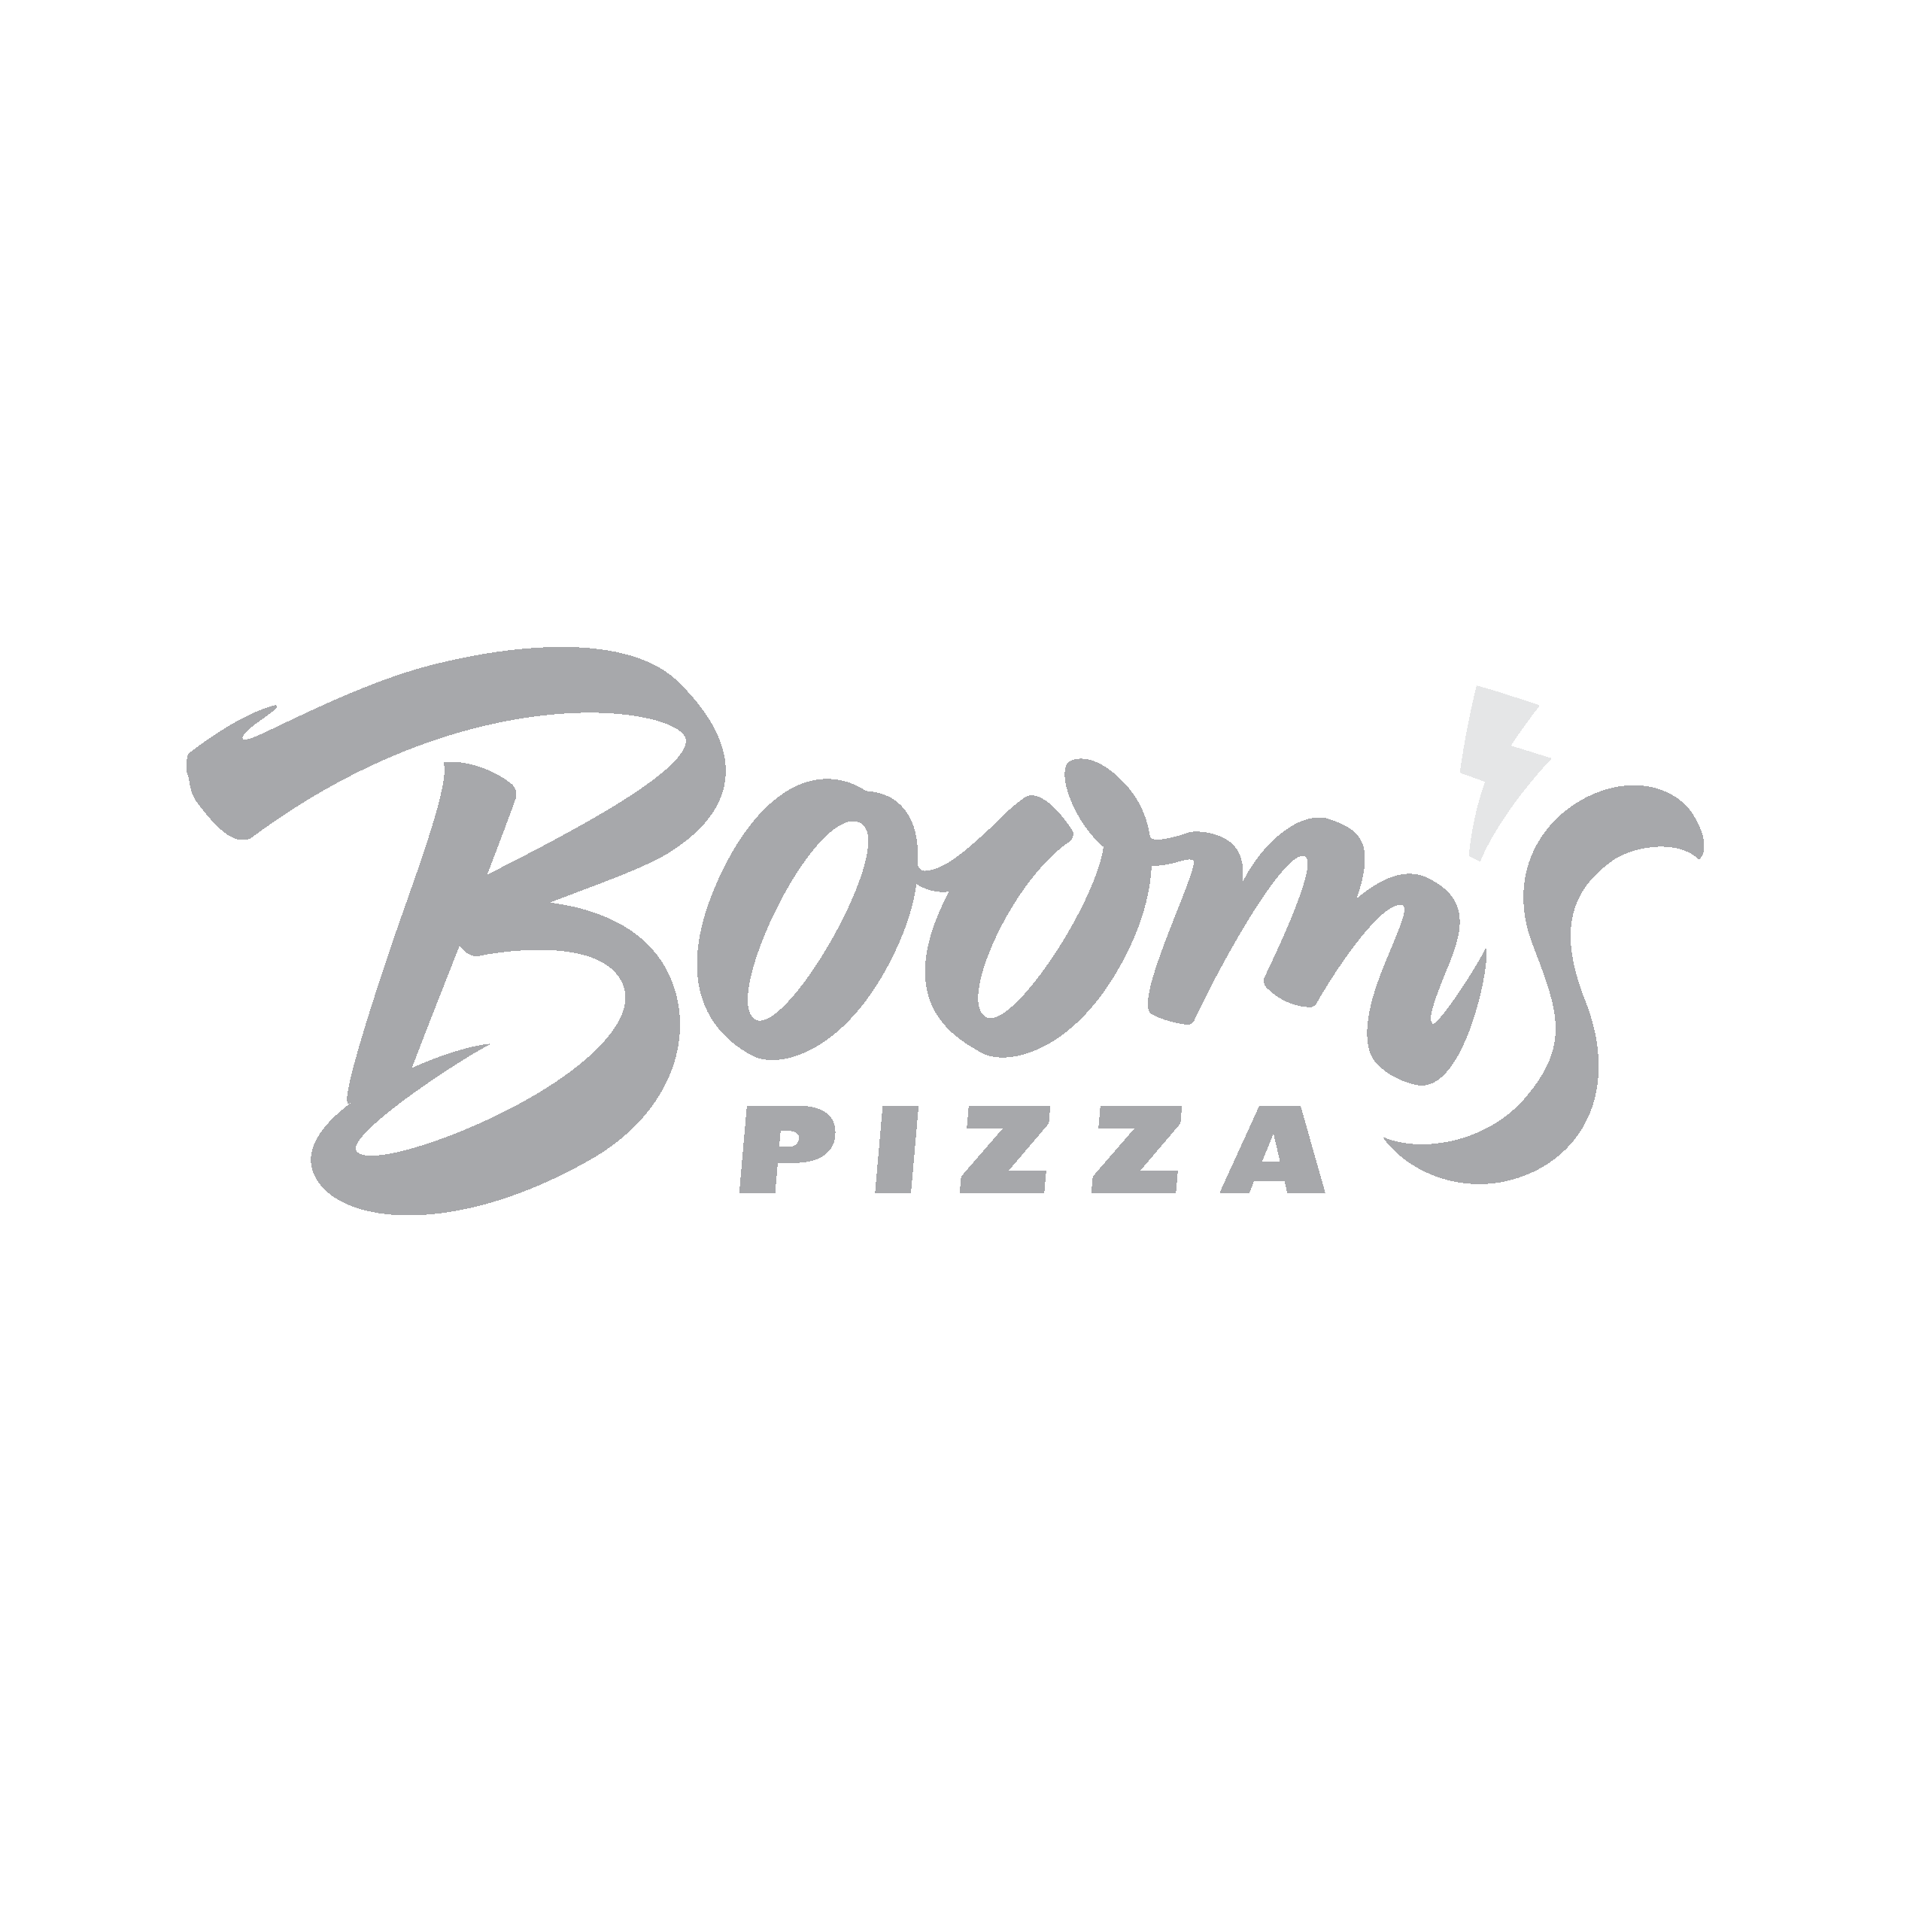 Booms Pizza